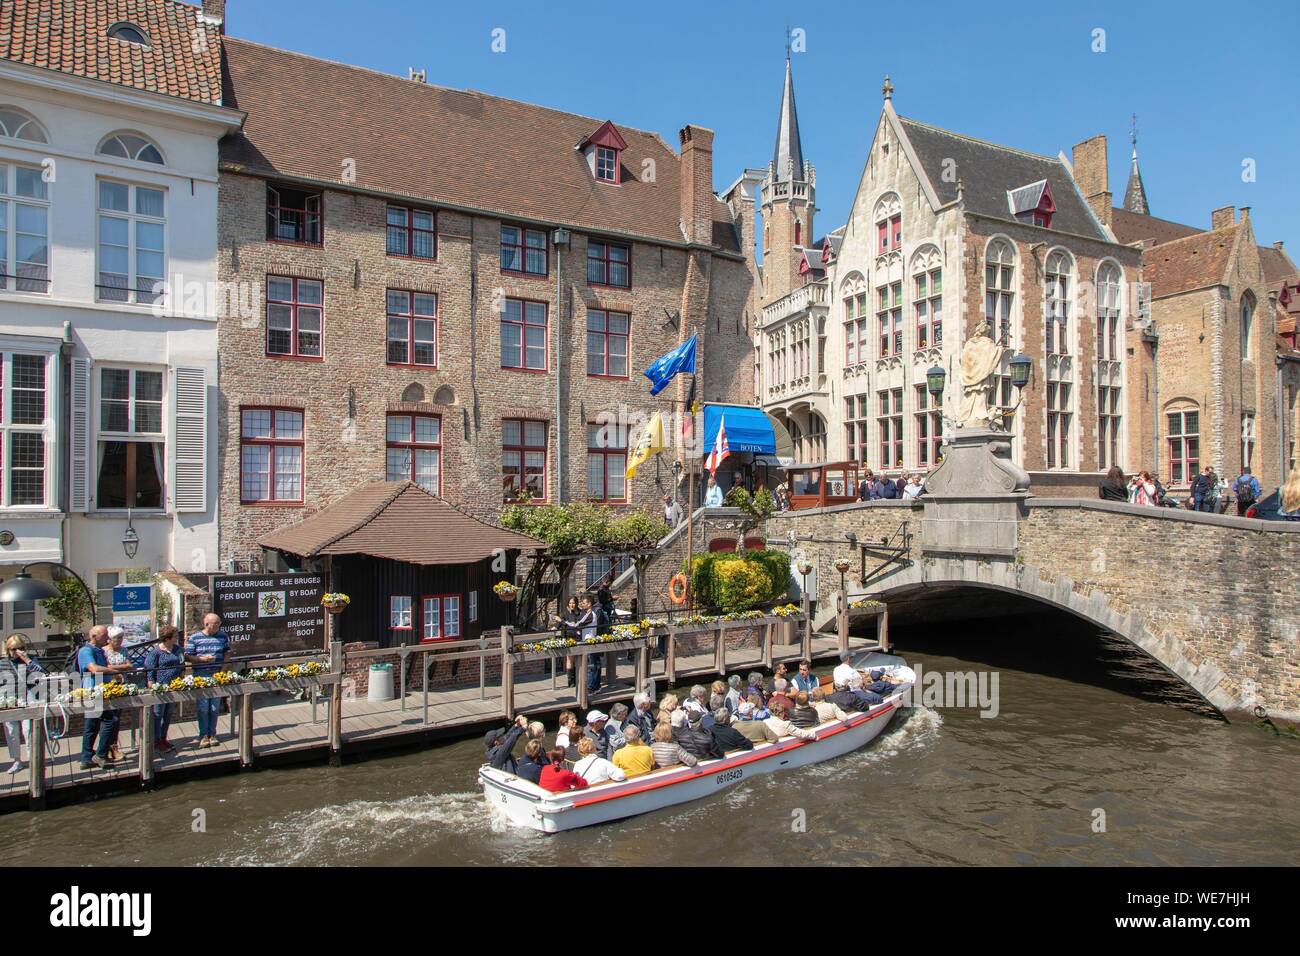 Bélgica, Flandes Occidental, brujas, centro histórico catalogado como Patrimonio Mundial por la UNESCO, el Puente de San Juan Nepomuceno, Wollestraat Foto de stock